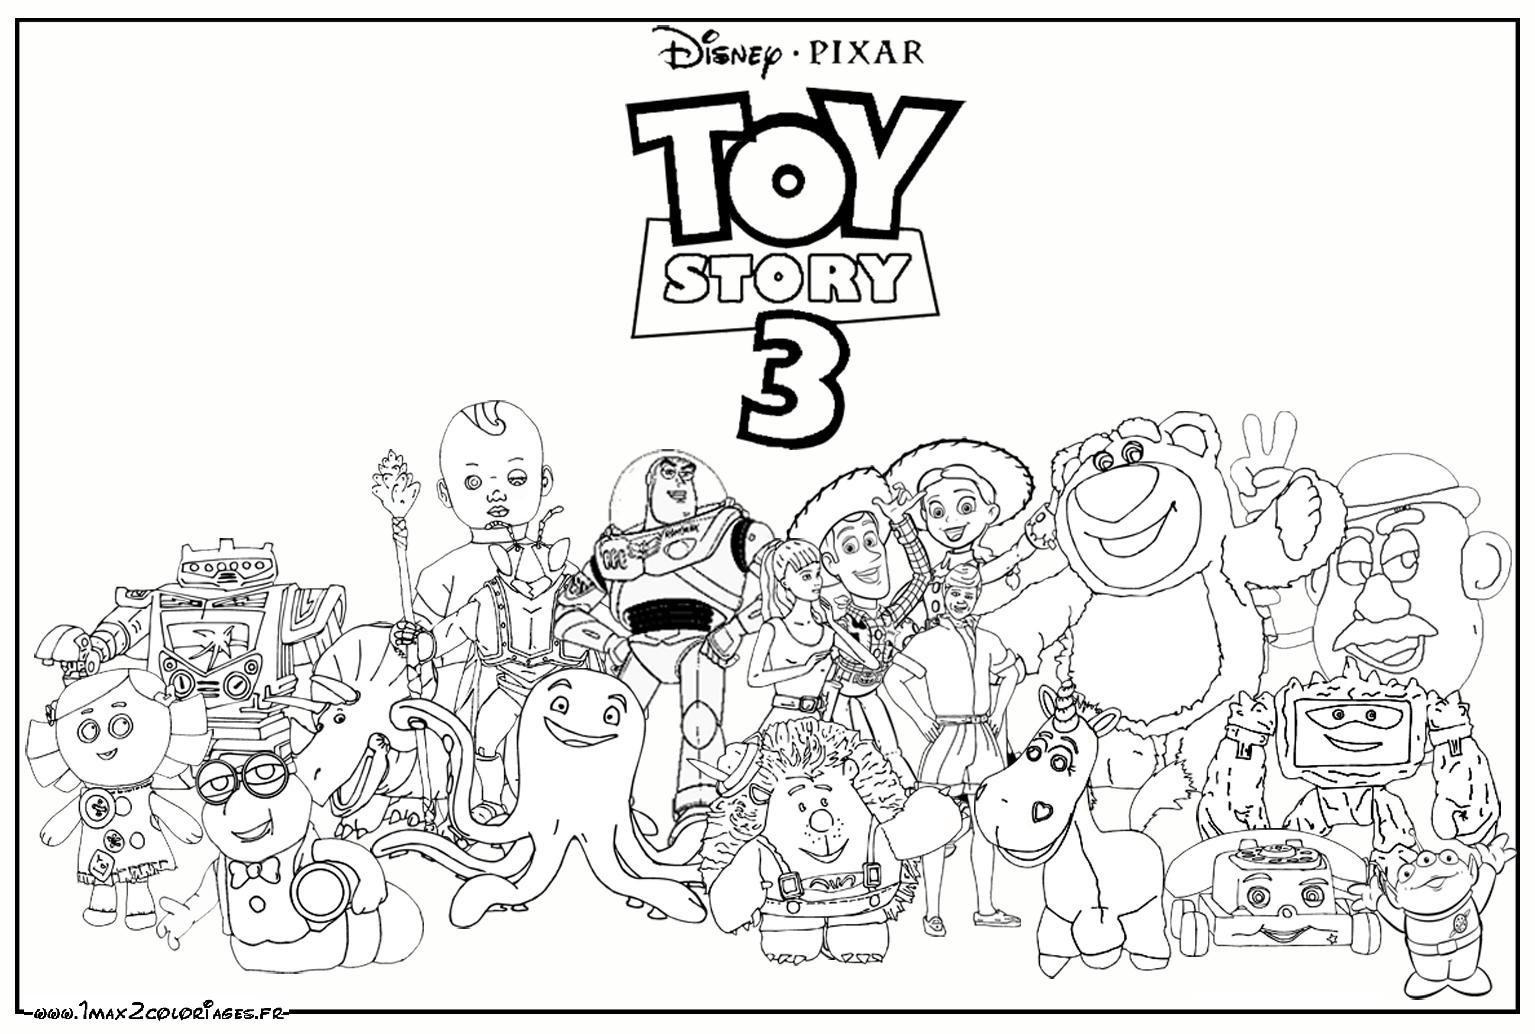 Woody buzz Lightyear Jessy Rex Hamm Zigzag Toy Story Kids